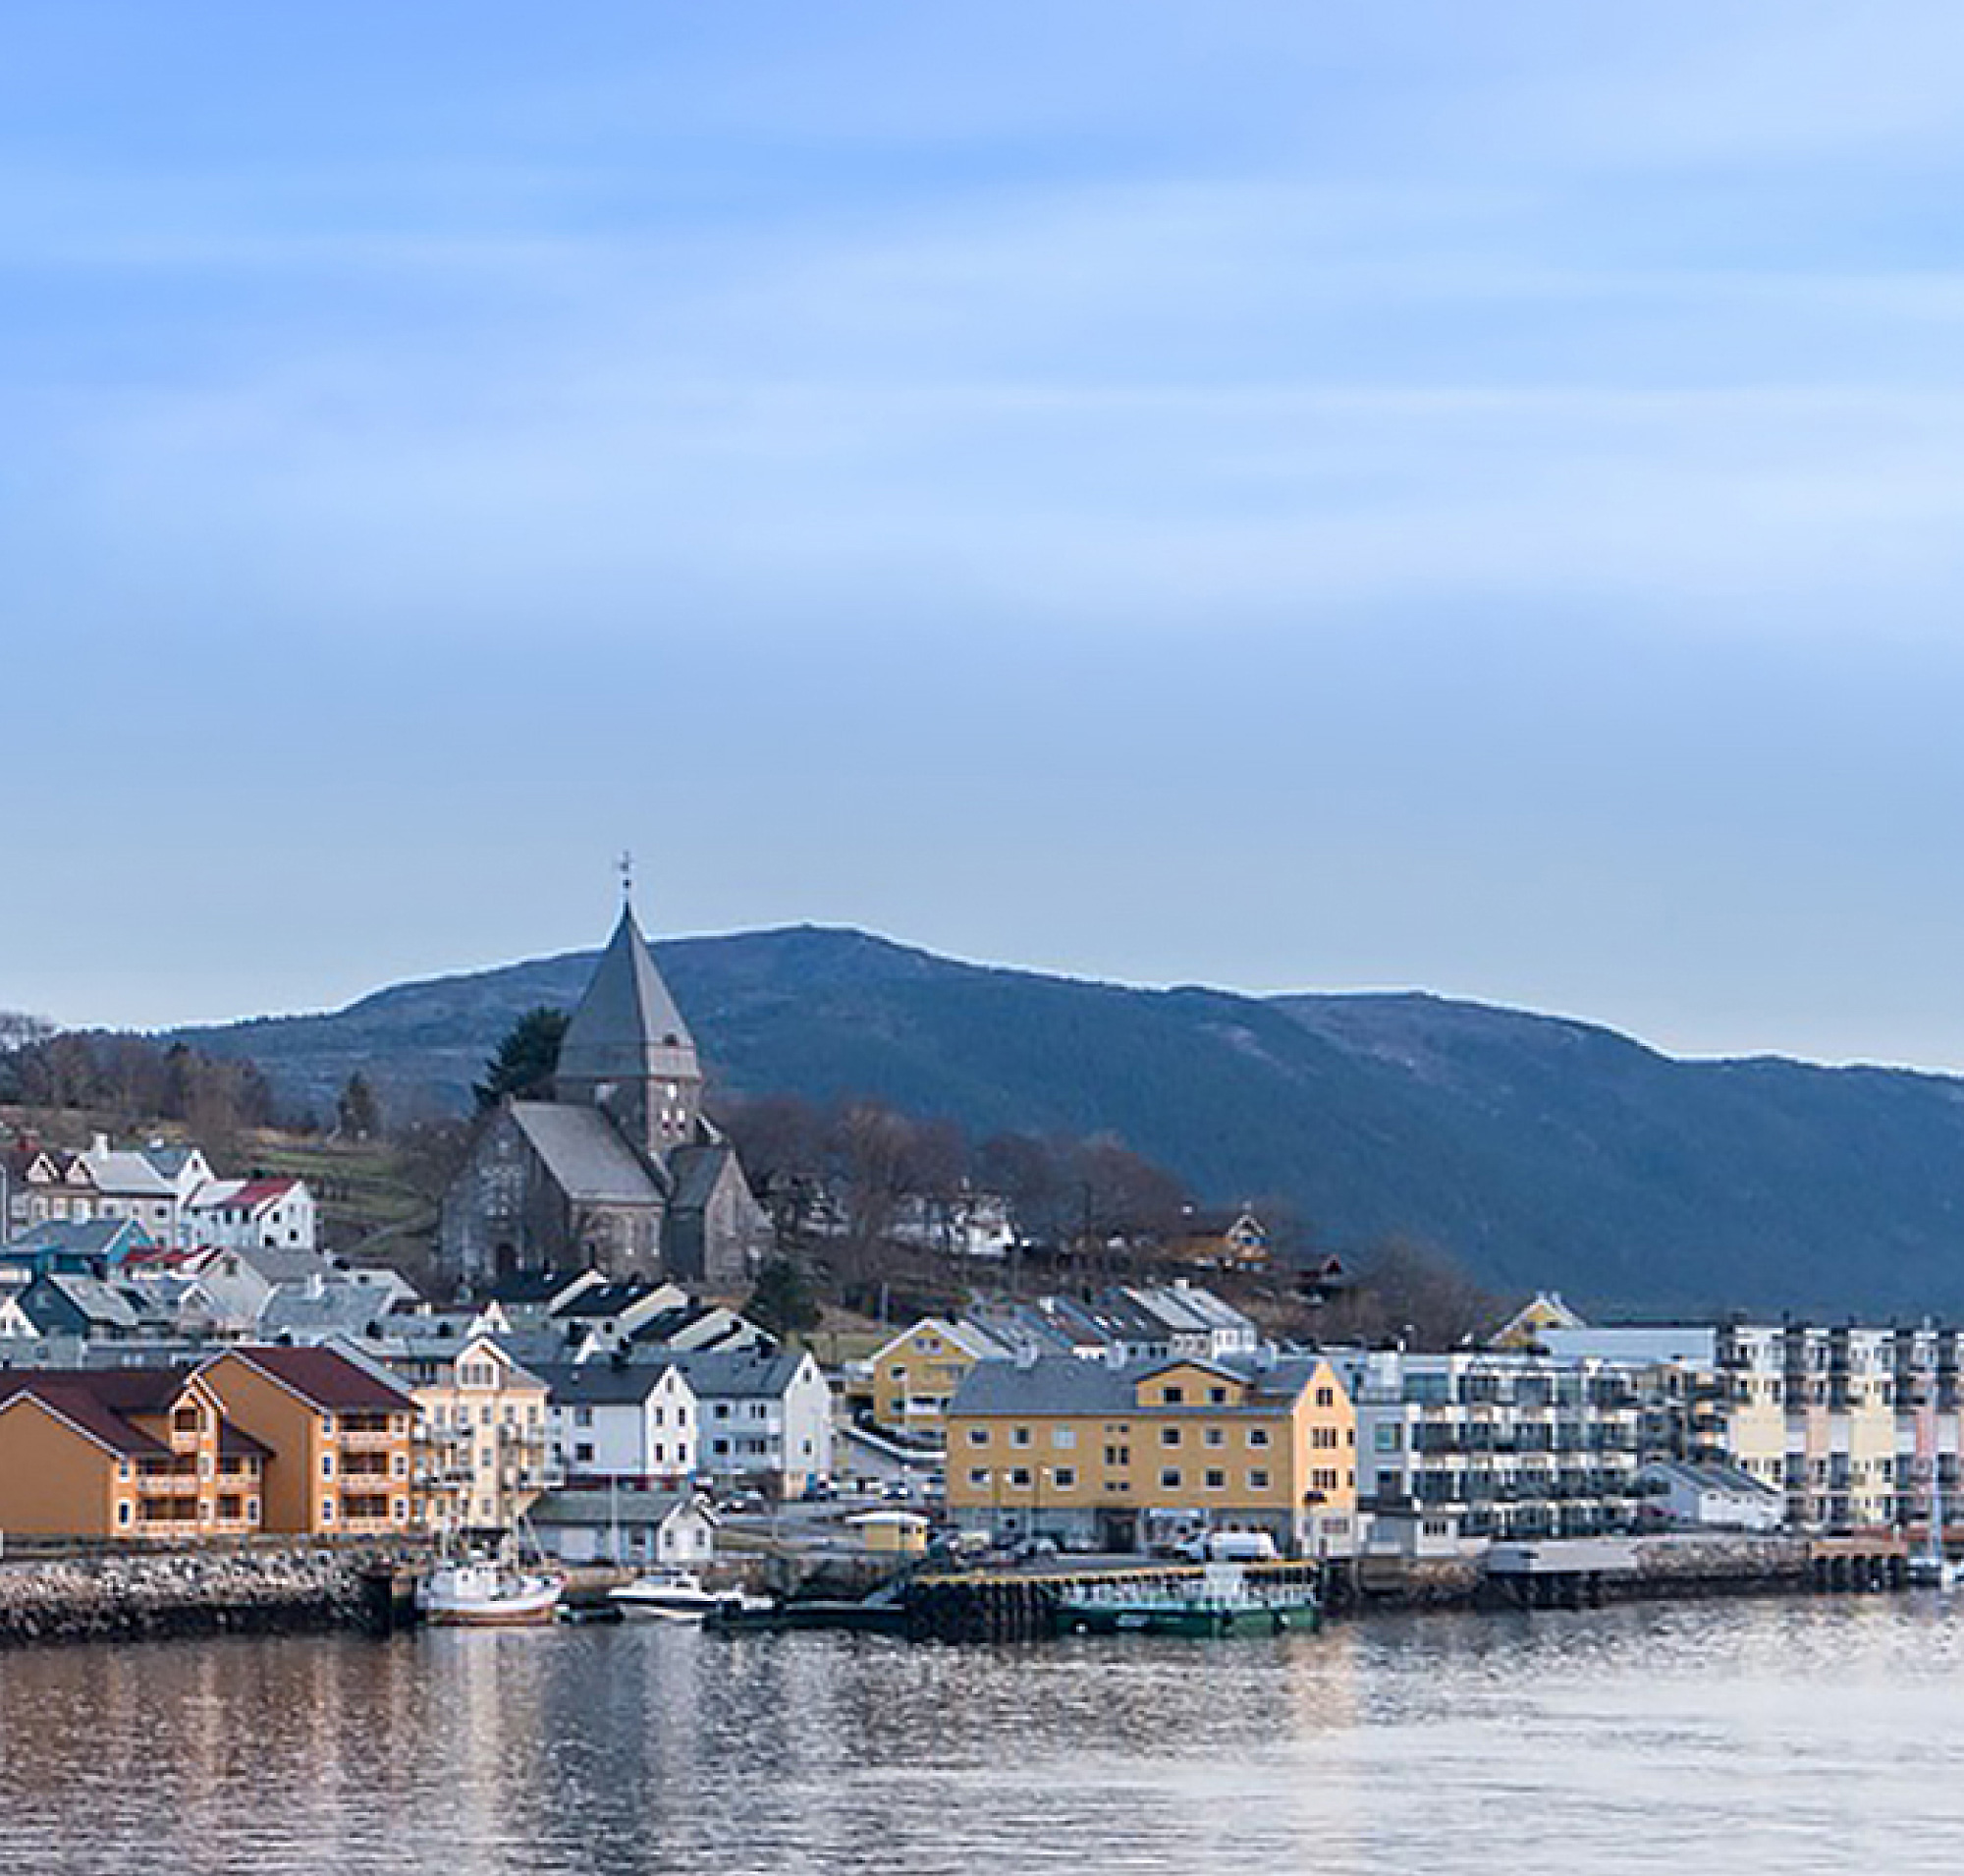 Hình ảnh một thị trấn ven biển Na Uy với các tòa nhà đầy màu sắc và nhà thờ nổi bật, phía sau phông nền là đồi núi 